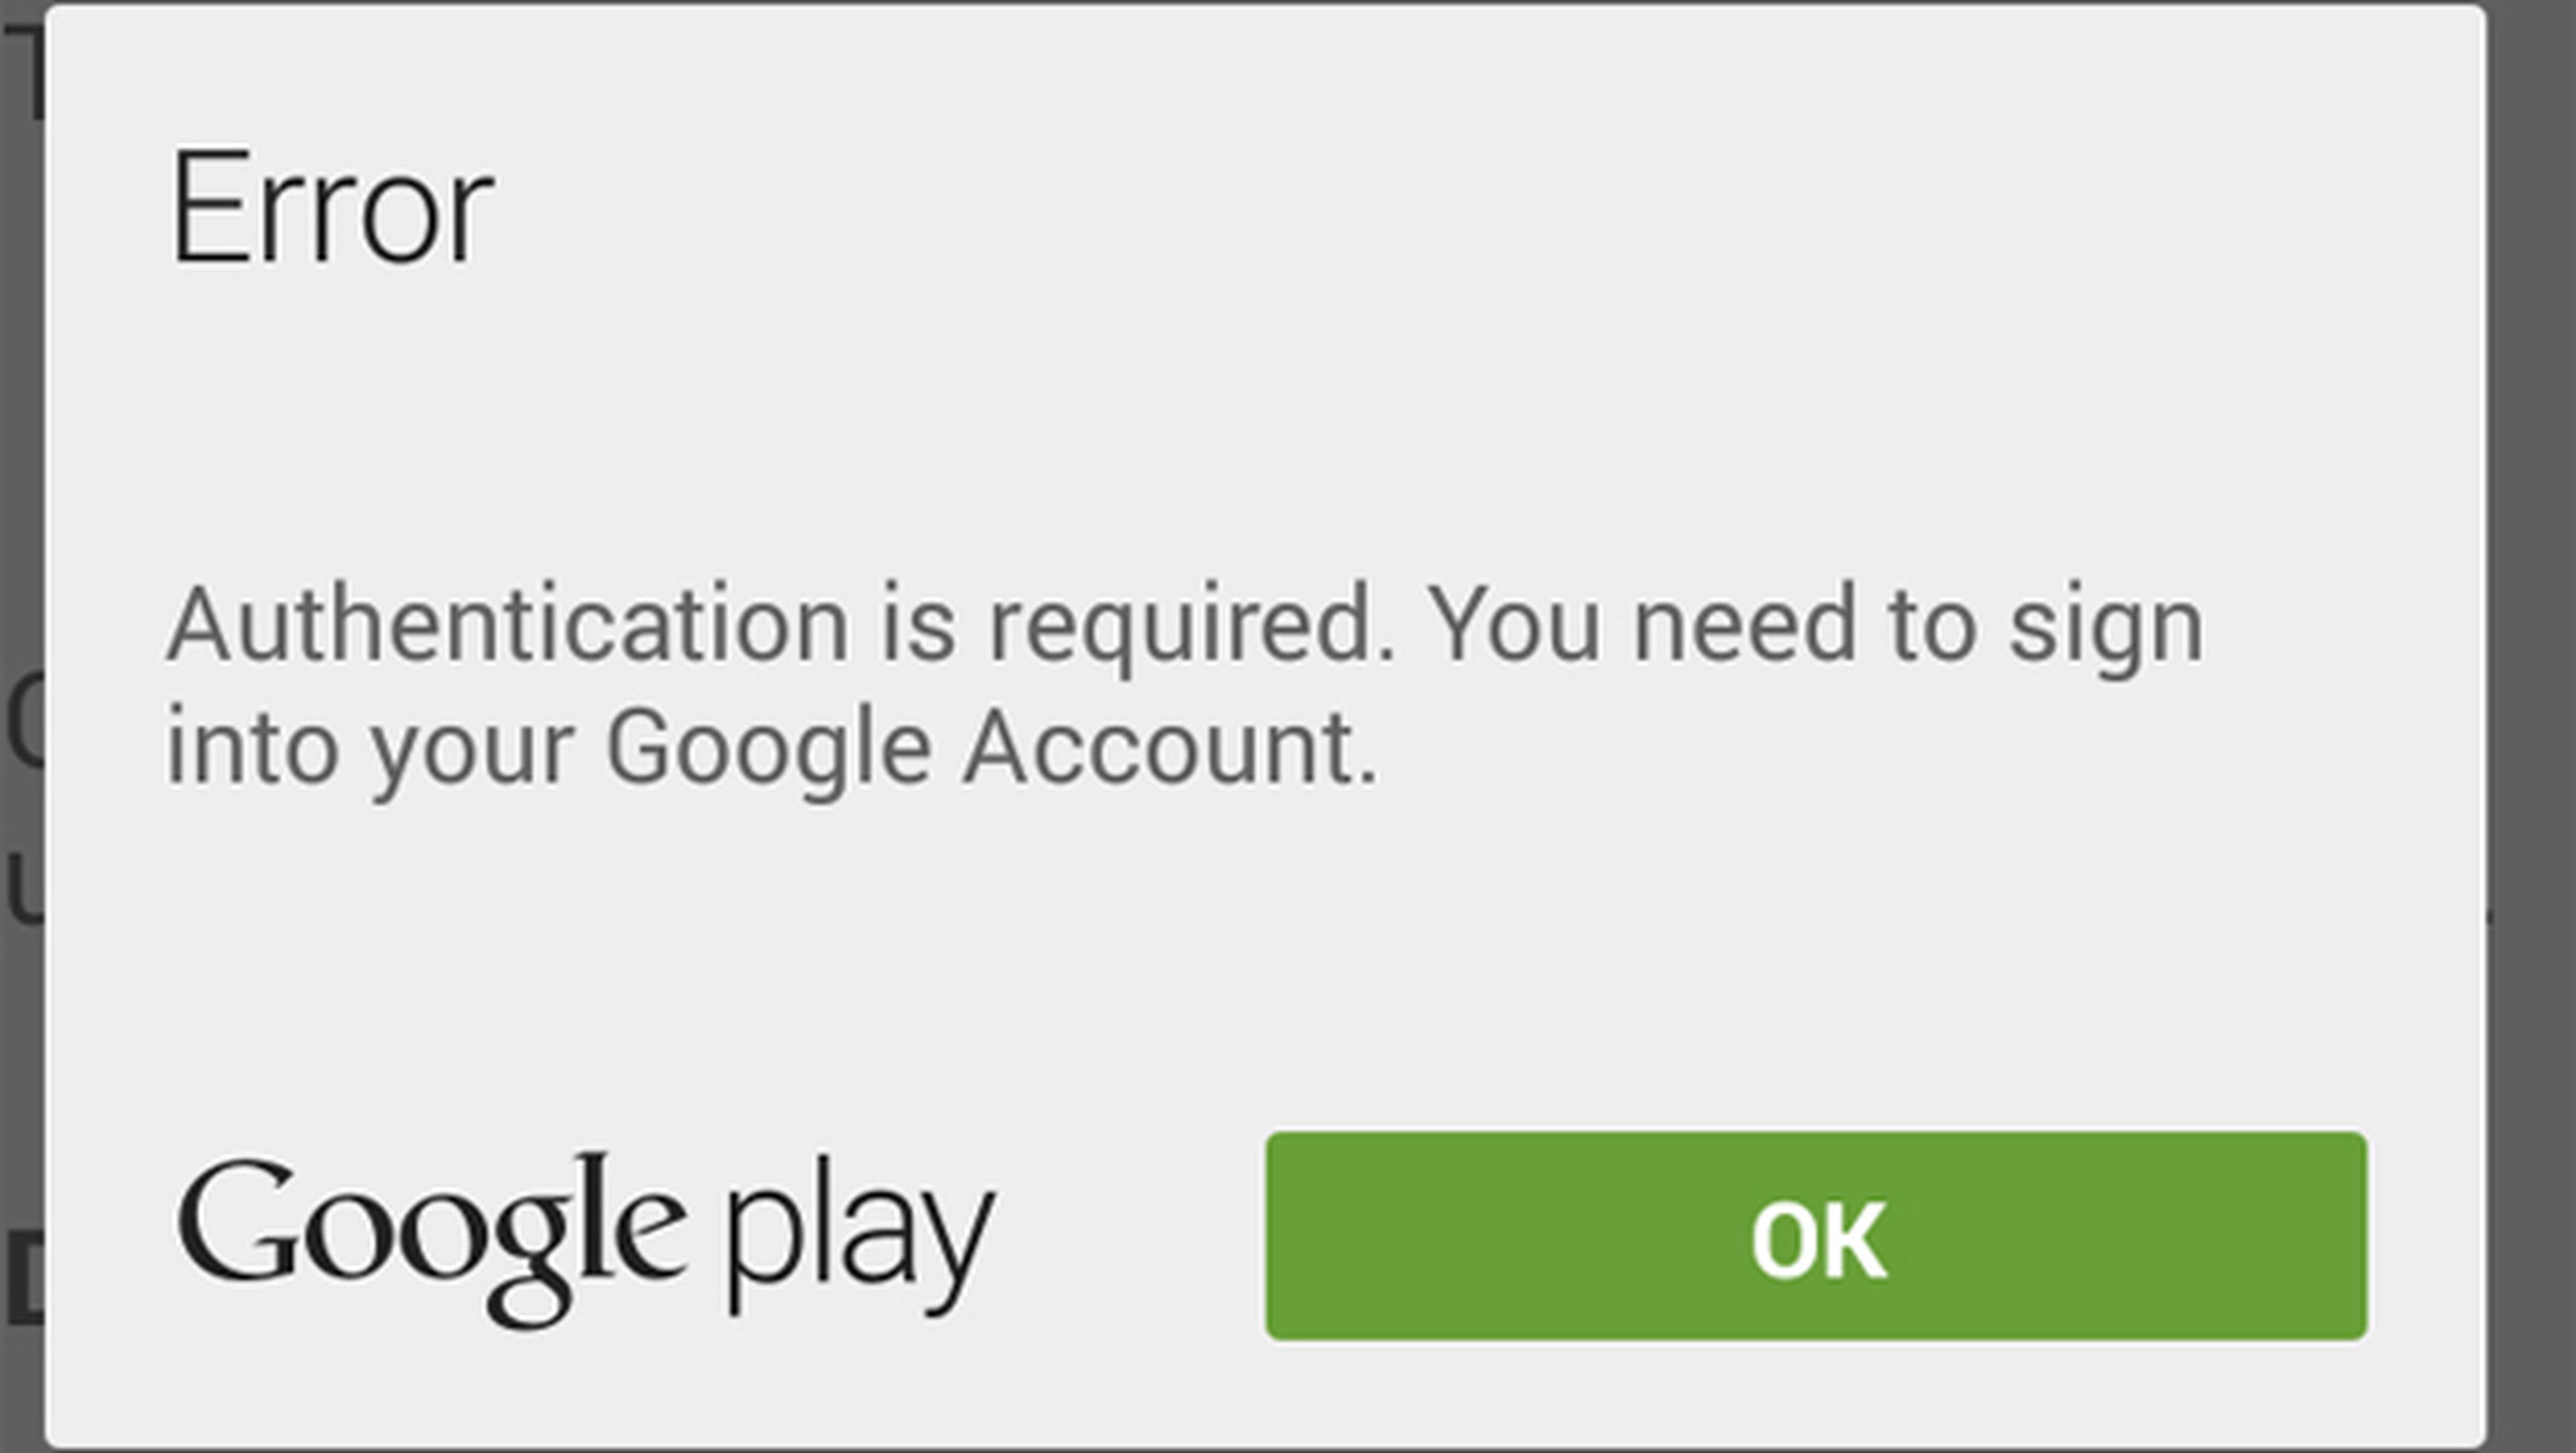 El error de que se requiere autenticación en Google Play